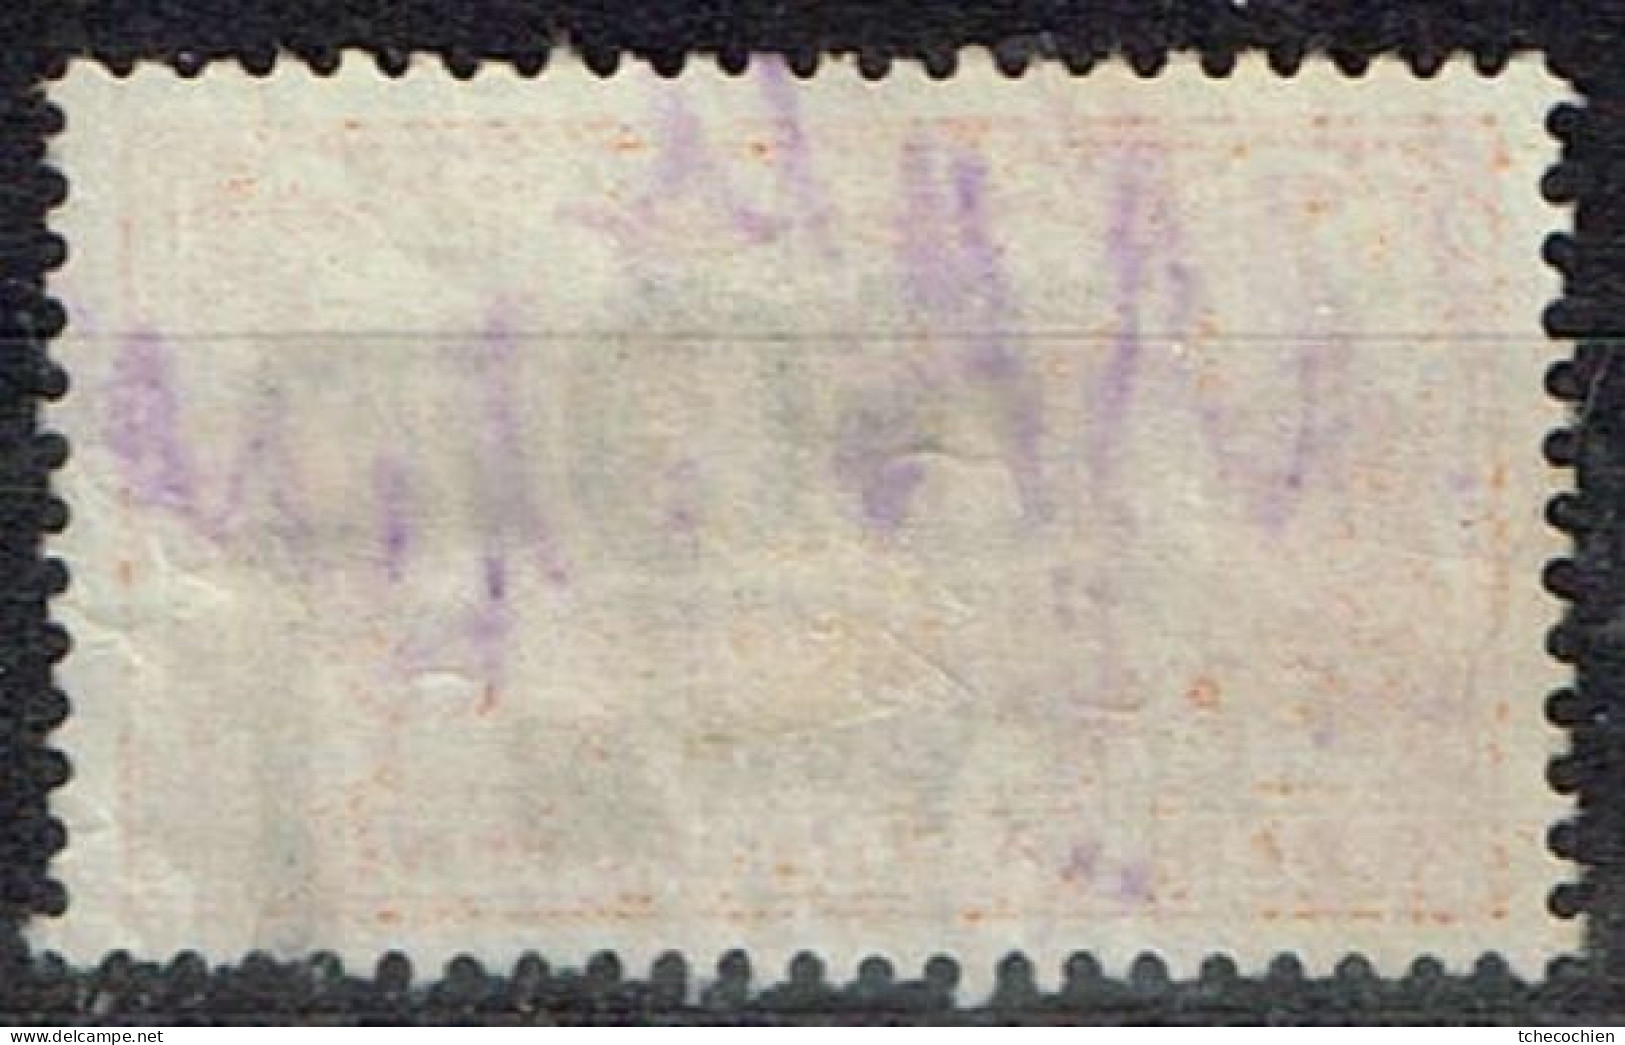 Pays-Bas - Nederlandsche Spoorwegen - Cancel OCT 1936 - Spoorwegzegels